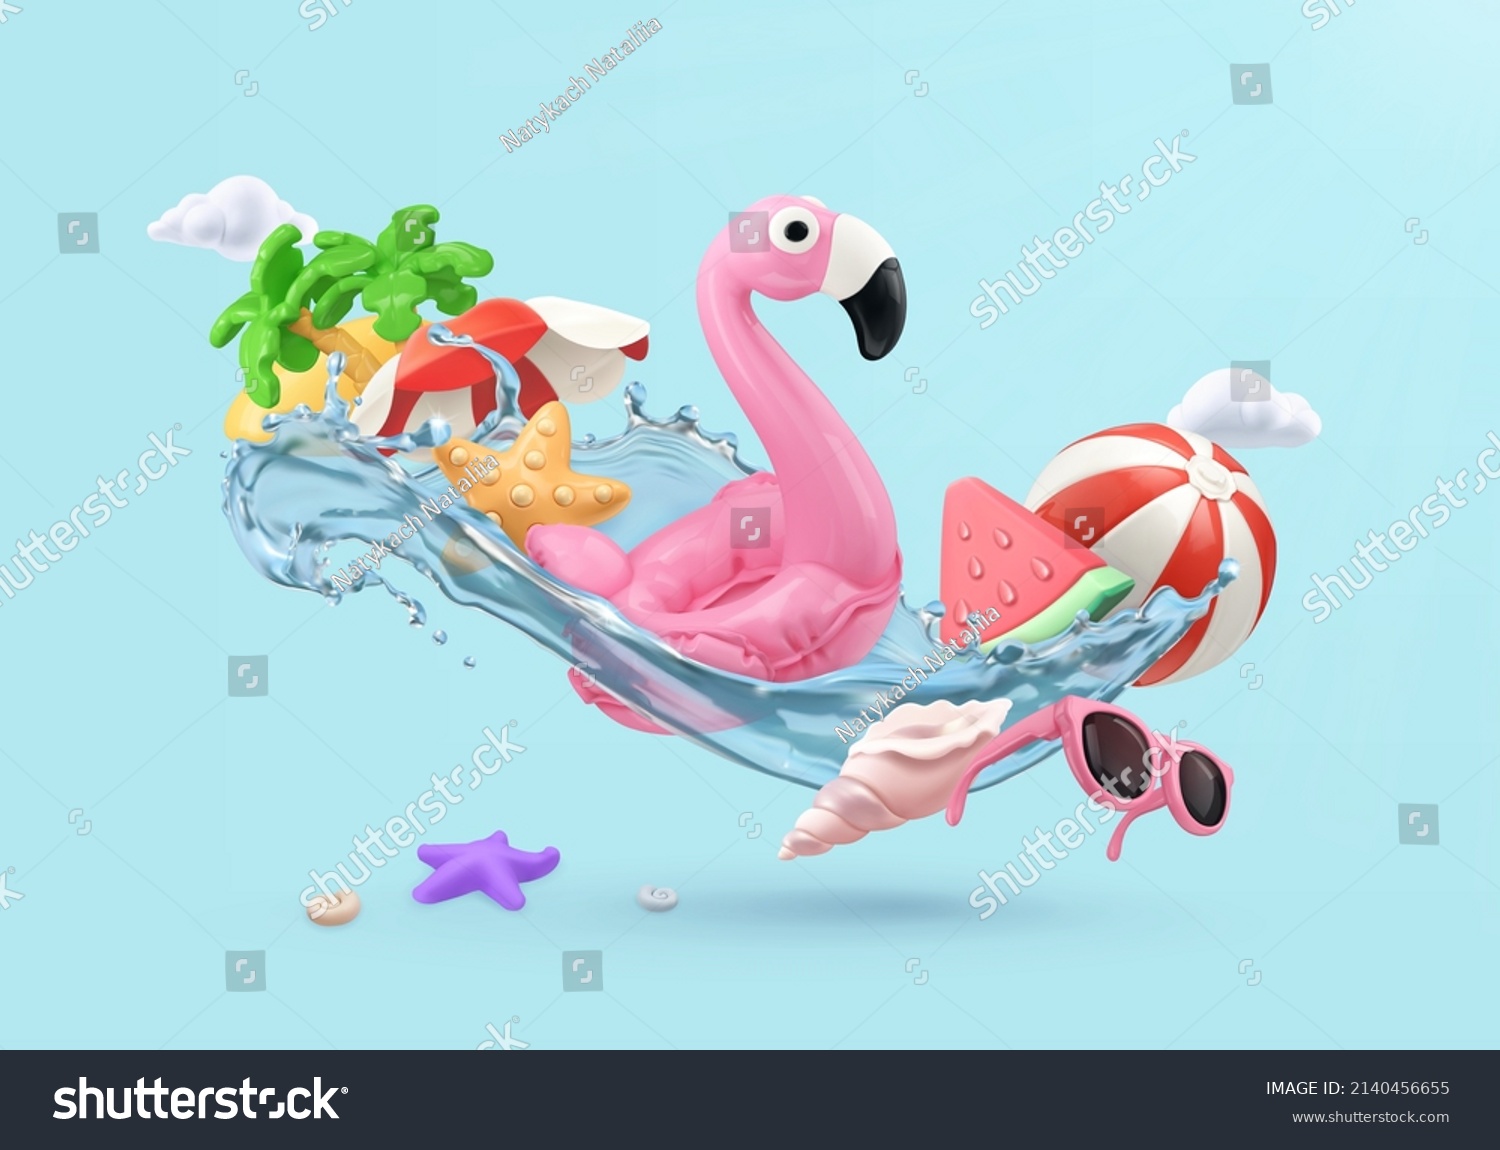 Sommerferien. Flamingo-aufblasbares Spielzeug, Wassermelone, Palmen, Muschel, Wassersplash 3D-Vektorgrafik-Elemente – Stockvektorgrafik